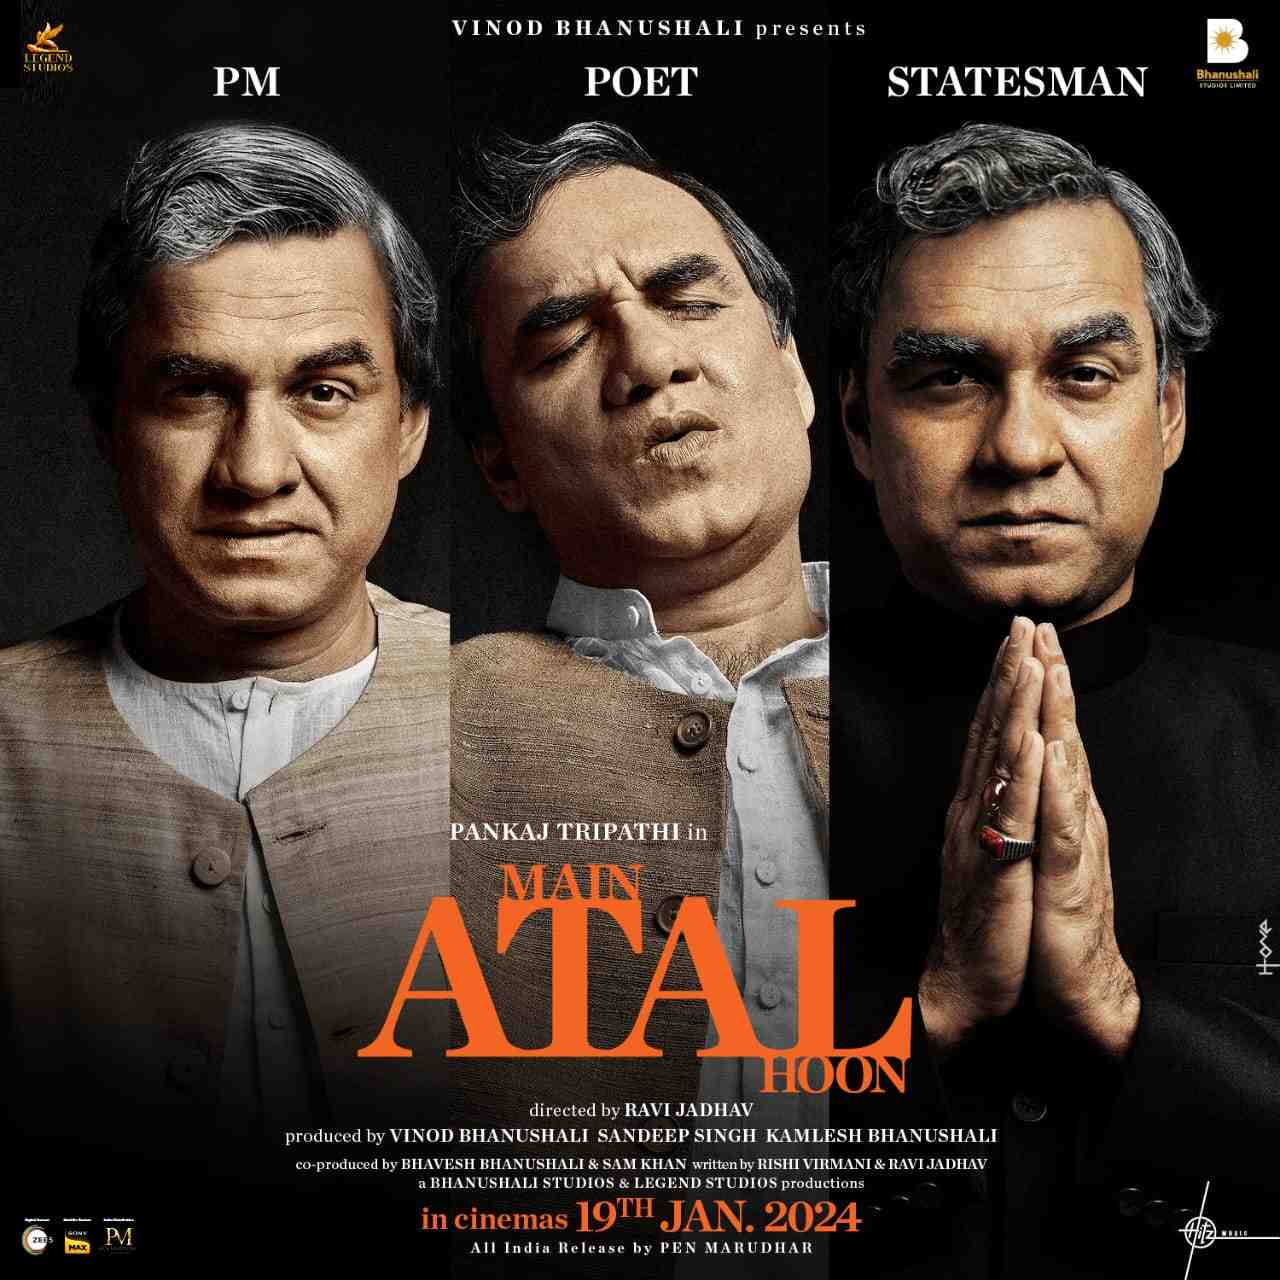 मैं अटल हूं: पंकज त्रिपाठी अभिनीत श्री अटल बिहारी वाजपेयी की बायोपिक का ट्रेलर हुआ रिलीज